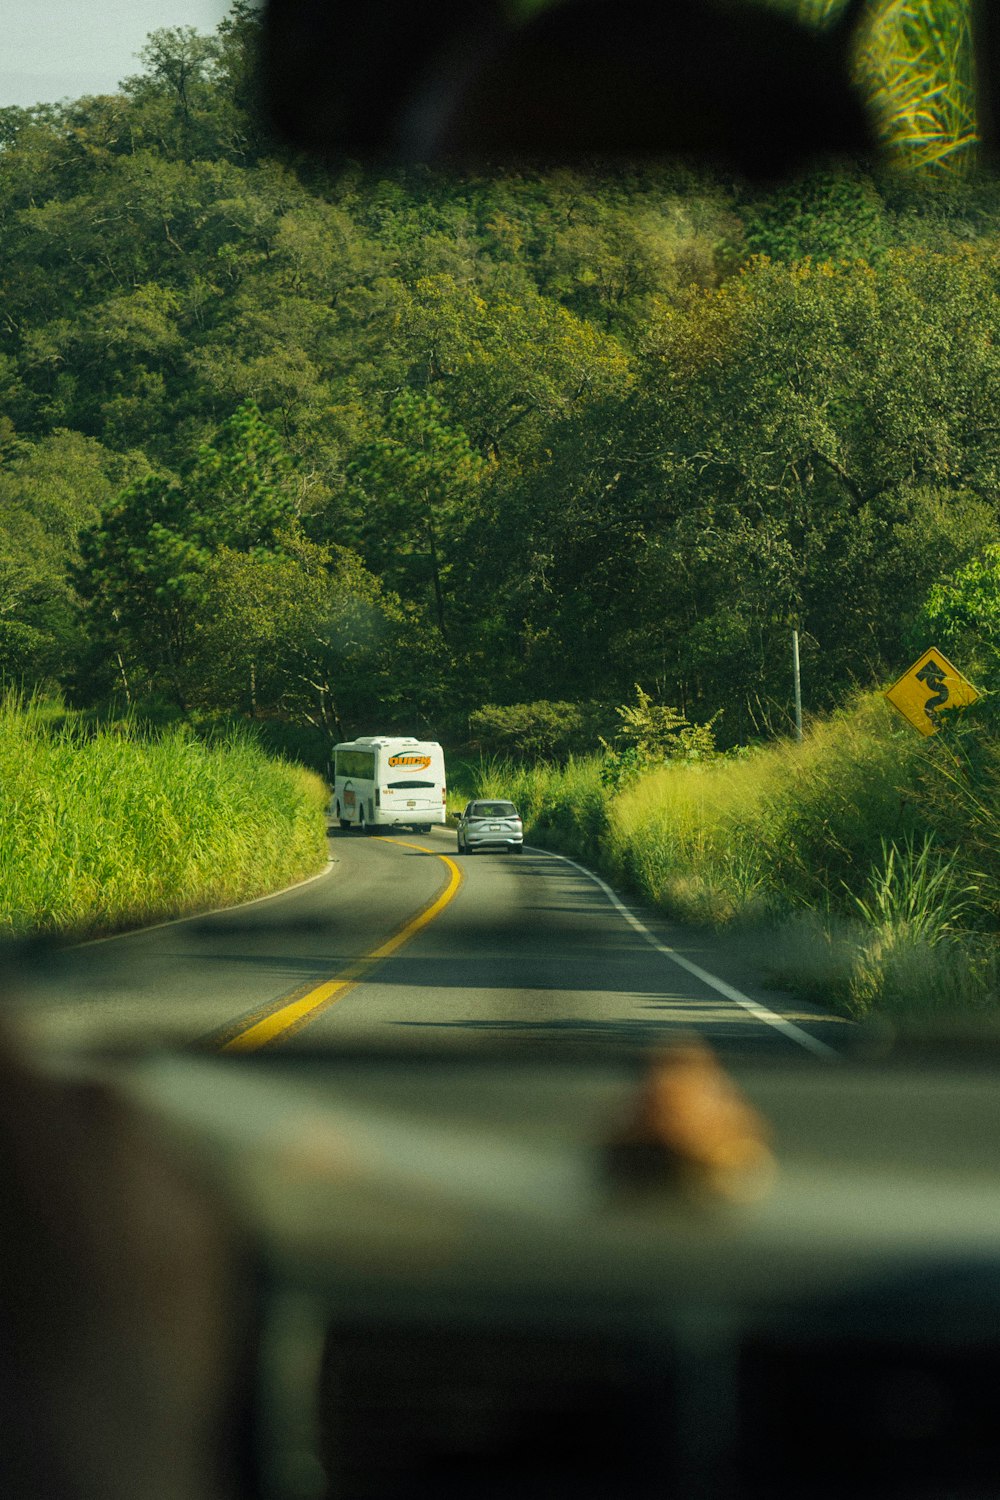 a car driving down a road next to a lush green hillside